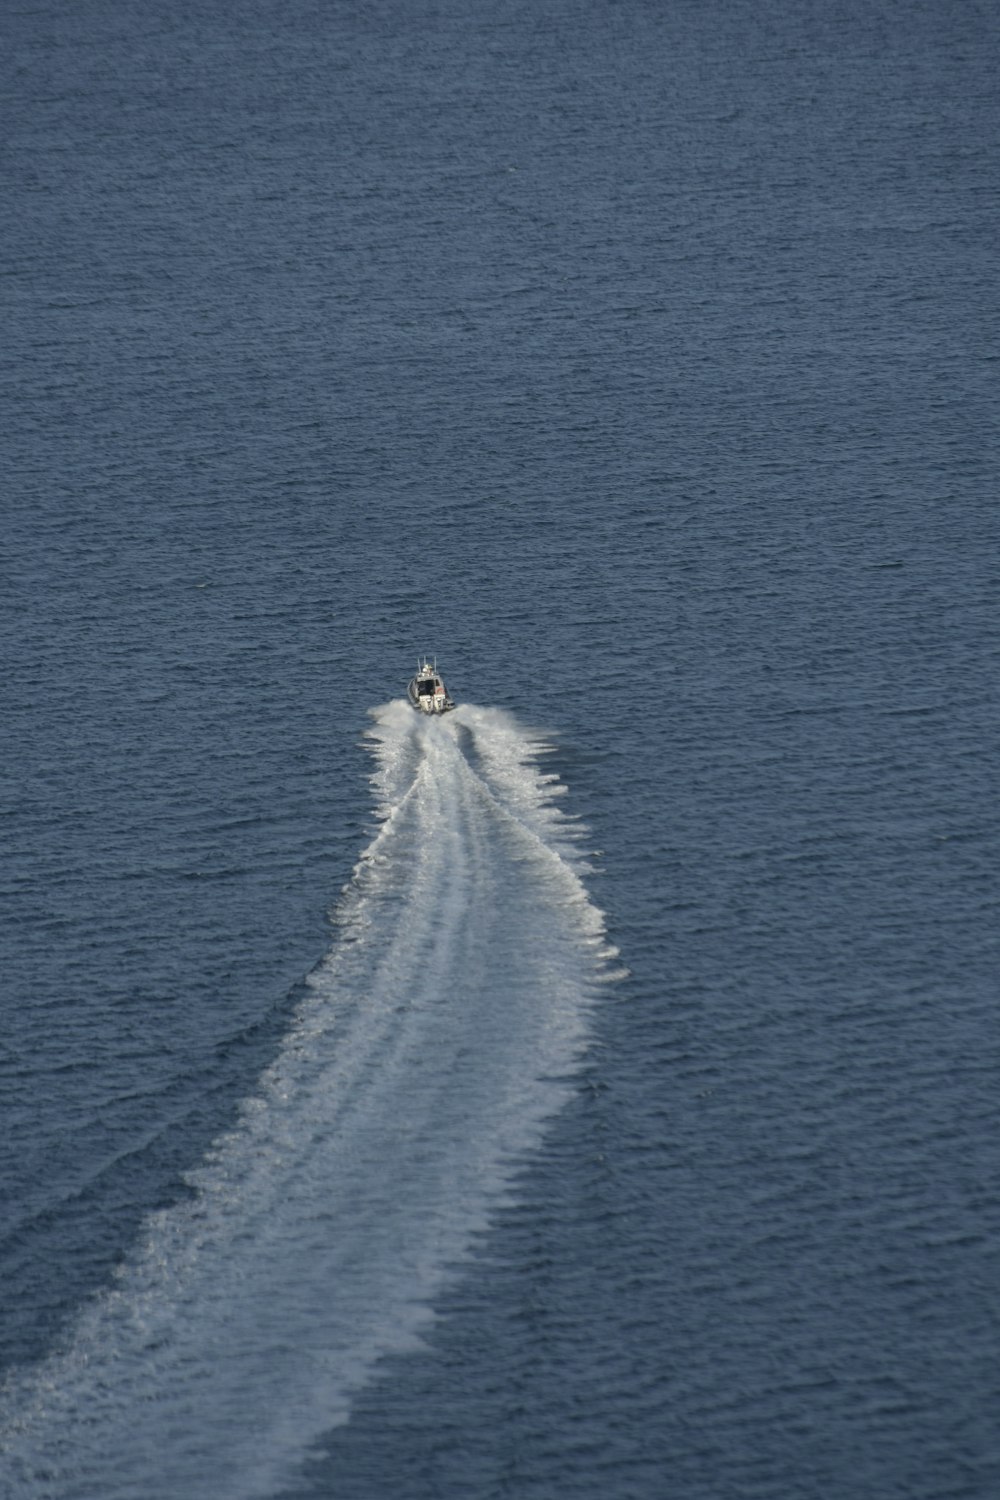 a speed boat speeding across a body of water